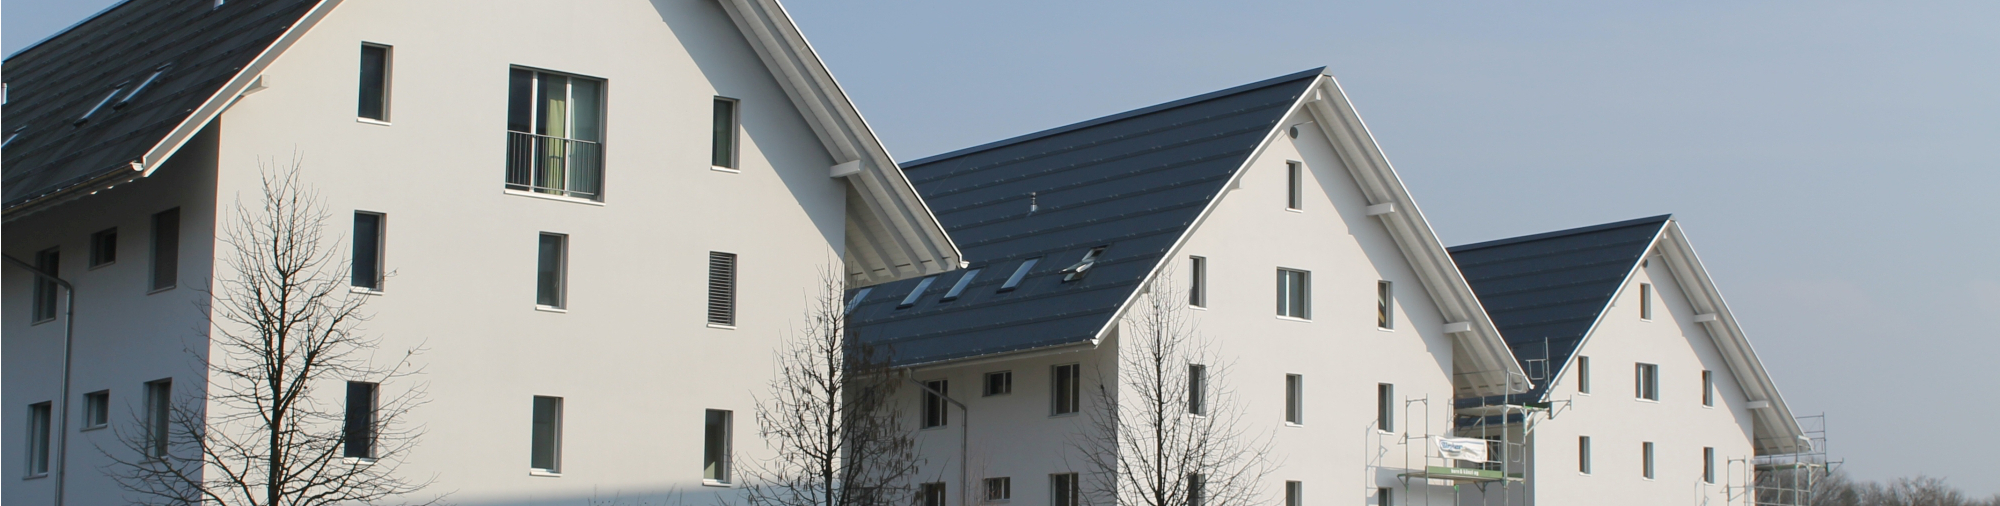 Solarpark Burgdorf hat genügend erneuerbare Energie dank Swiss Solartank und Solarsystem Jenni